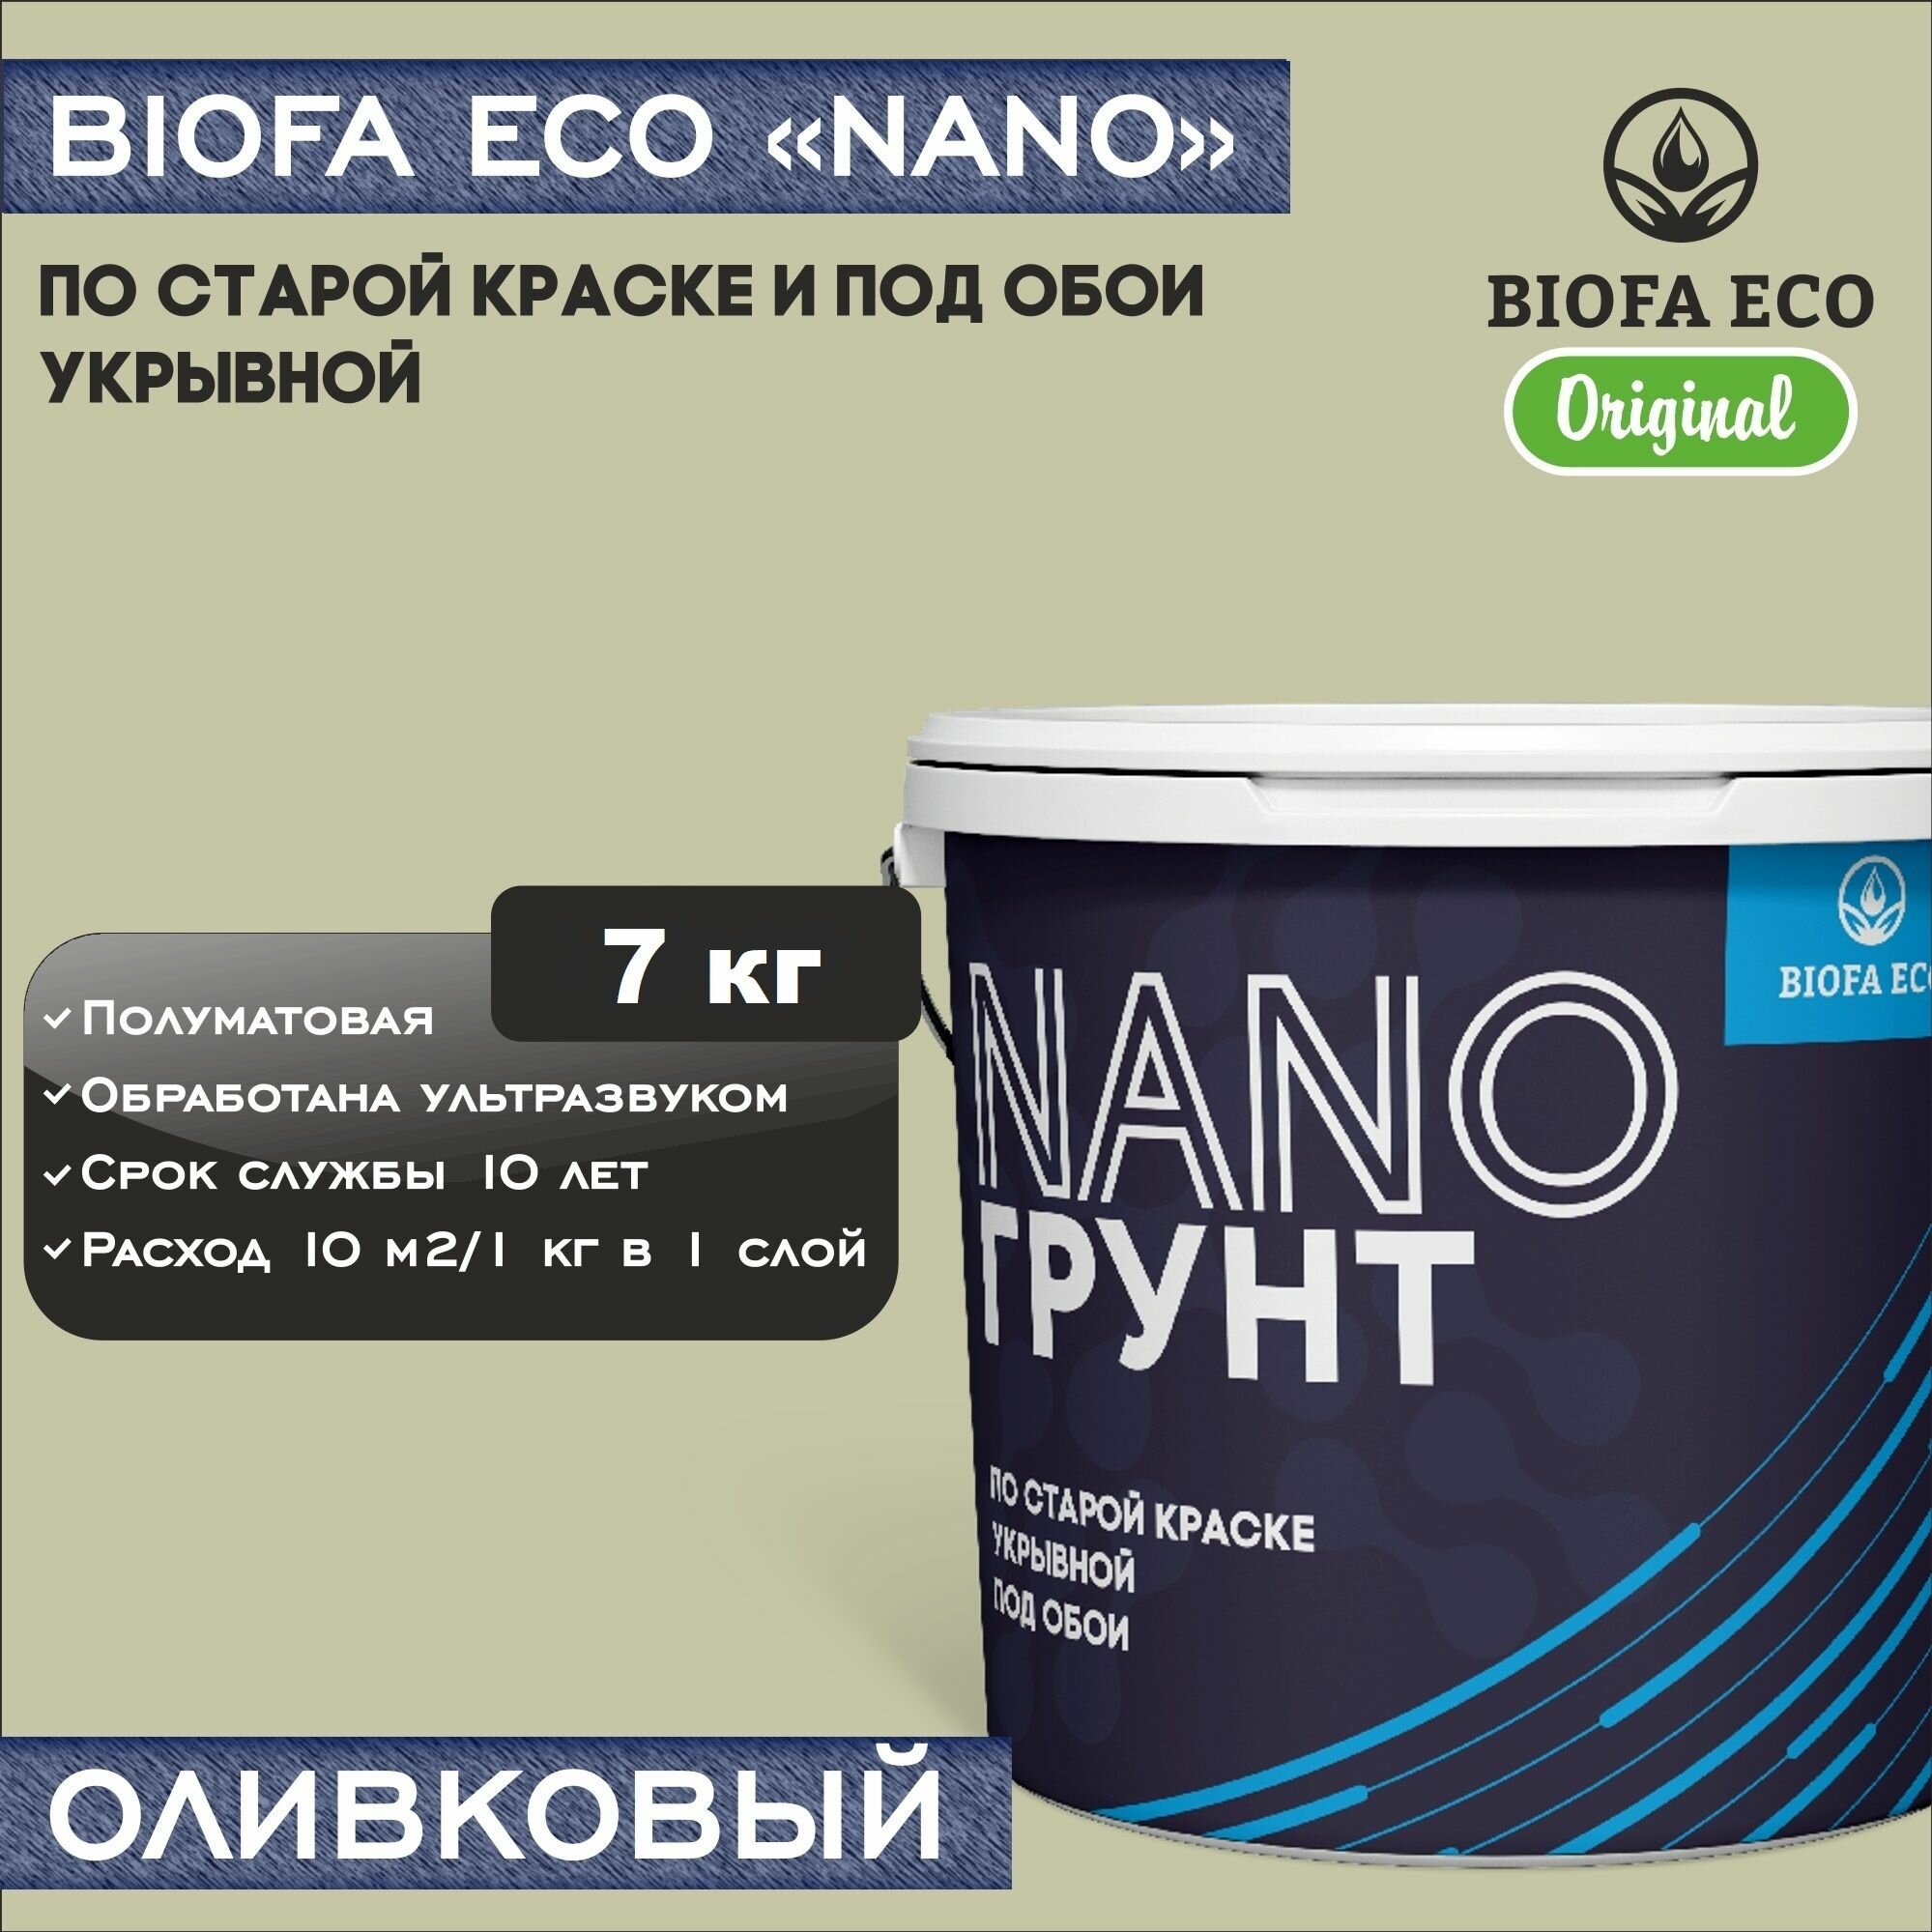 Грунт BIOFA ECO NANO укрывной под обои и по старой краске, адгезионный, цвет оливковый, 7 кг